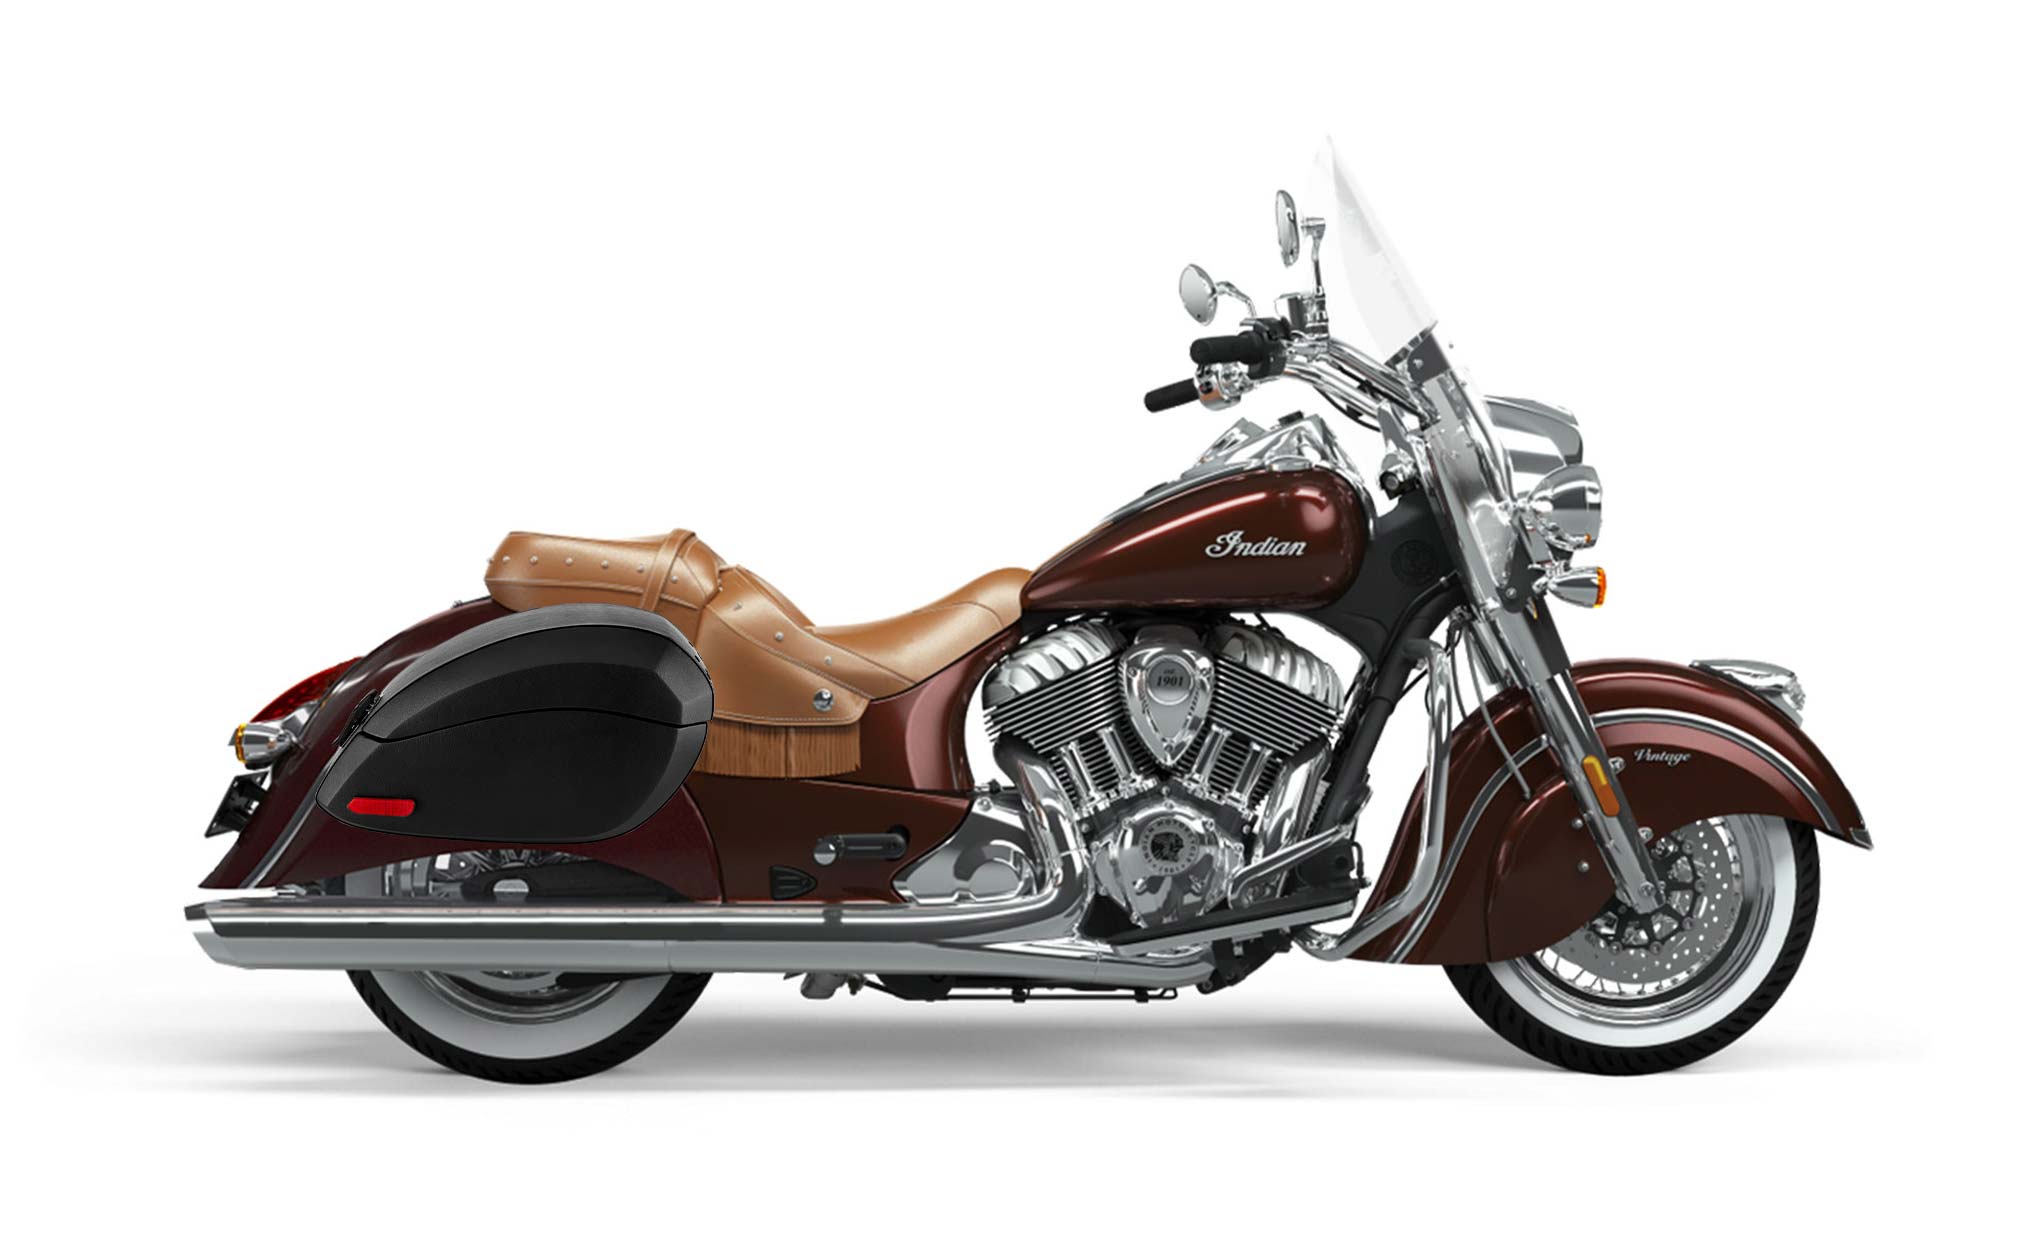 Viking Phantom Large Indian Vintage Leather Wrapped Motorcycle Hard Saddlebags on Bike Photo @expand